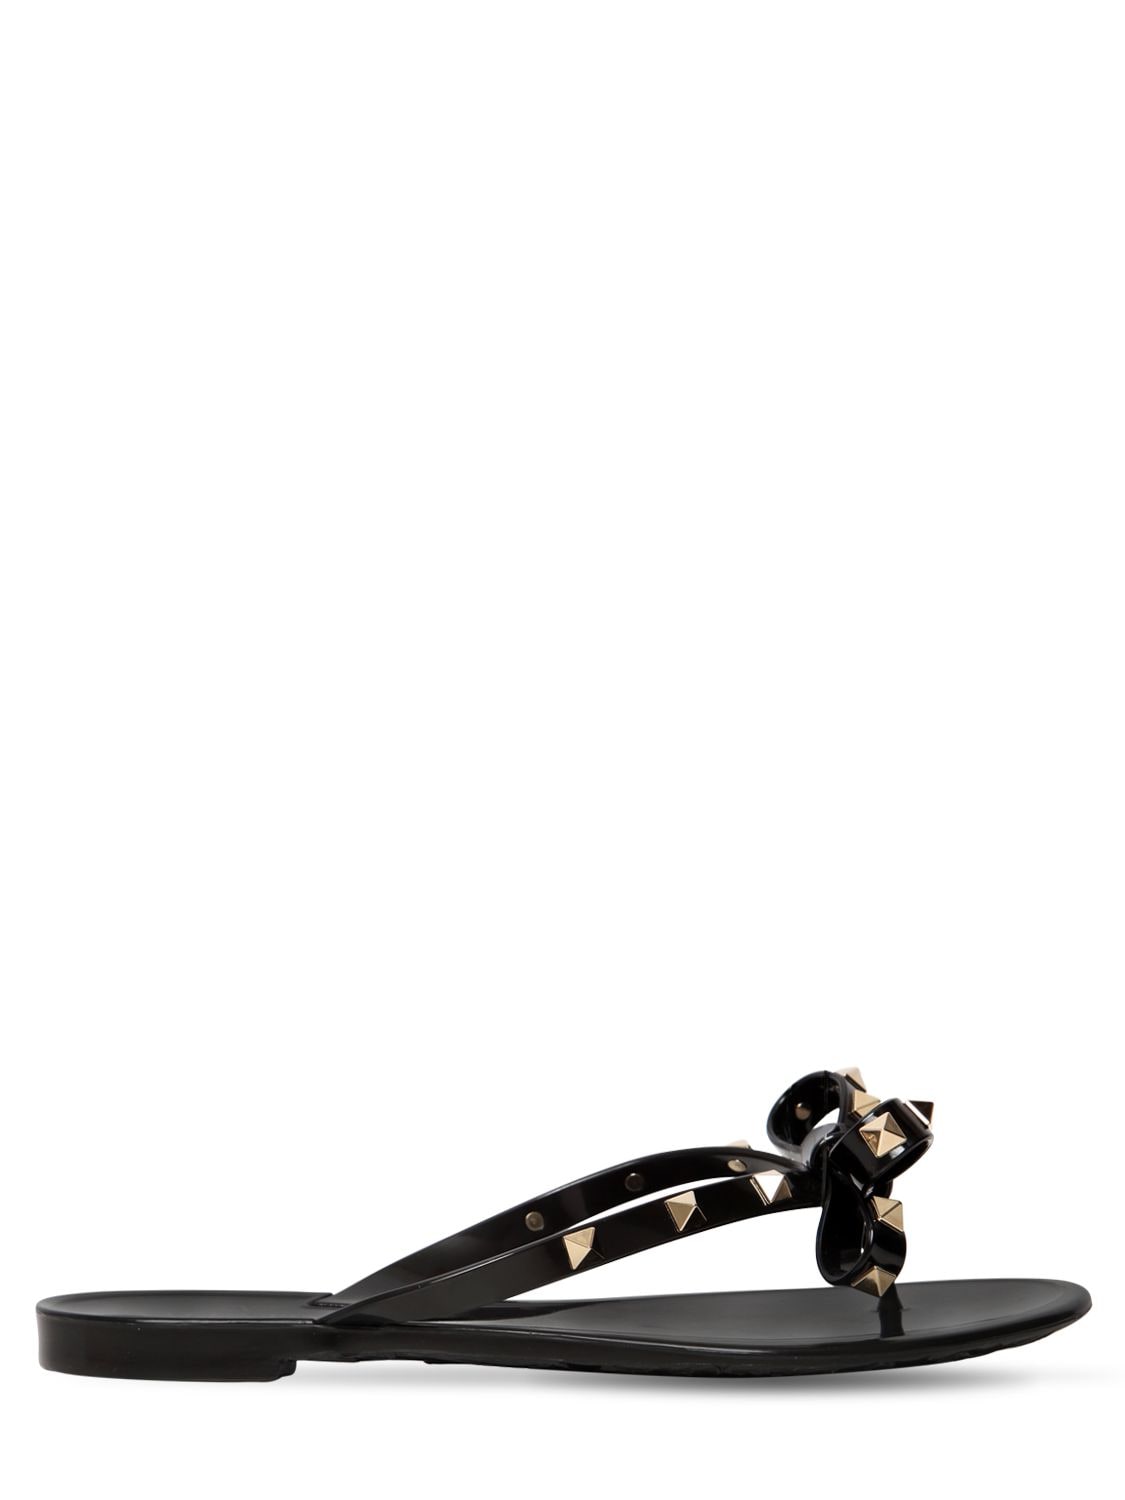 Valentino Garavani Rockstud Embellished Flip Flops In Black